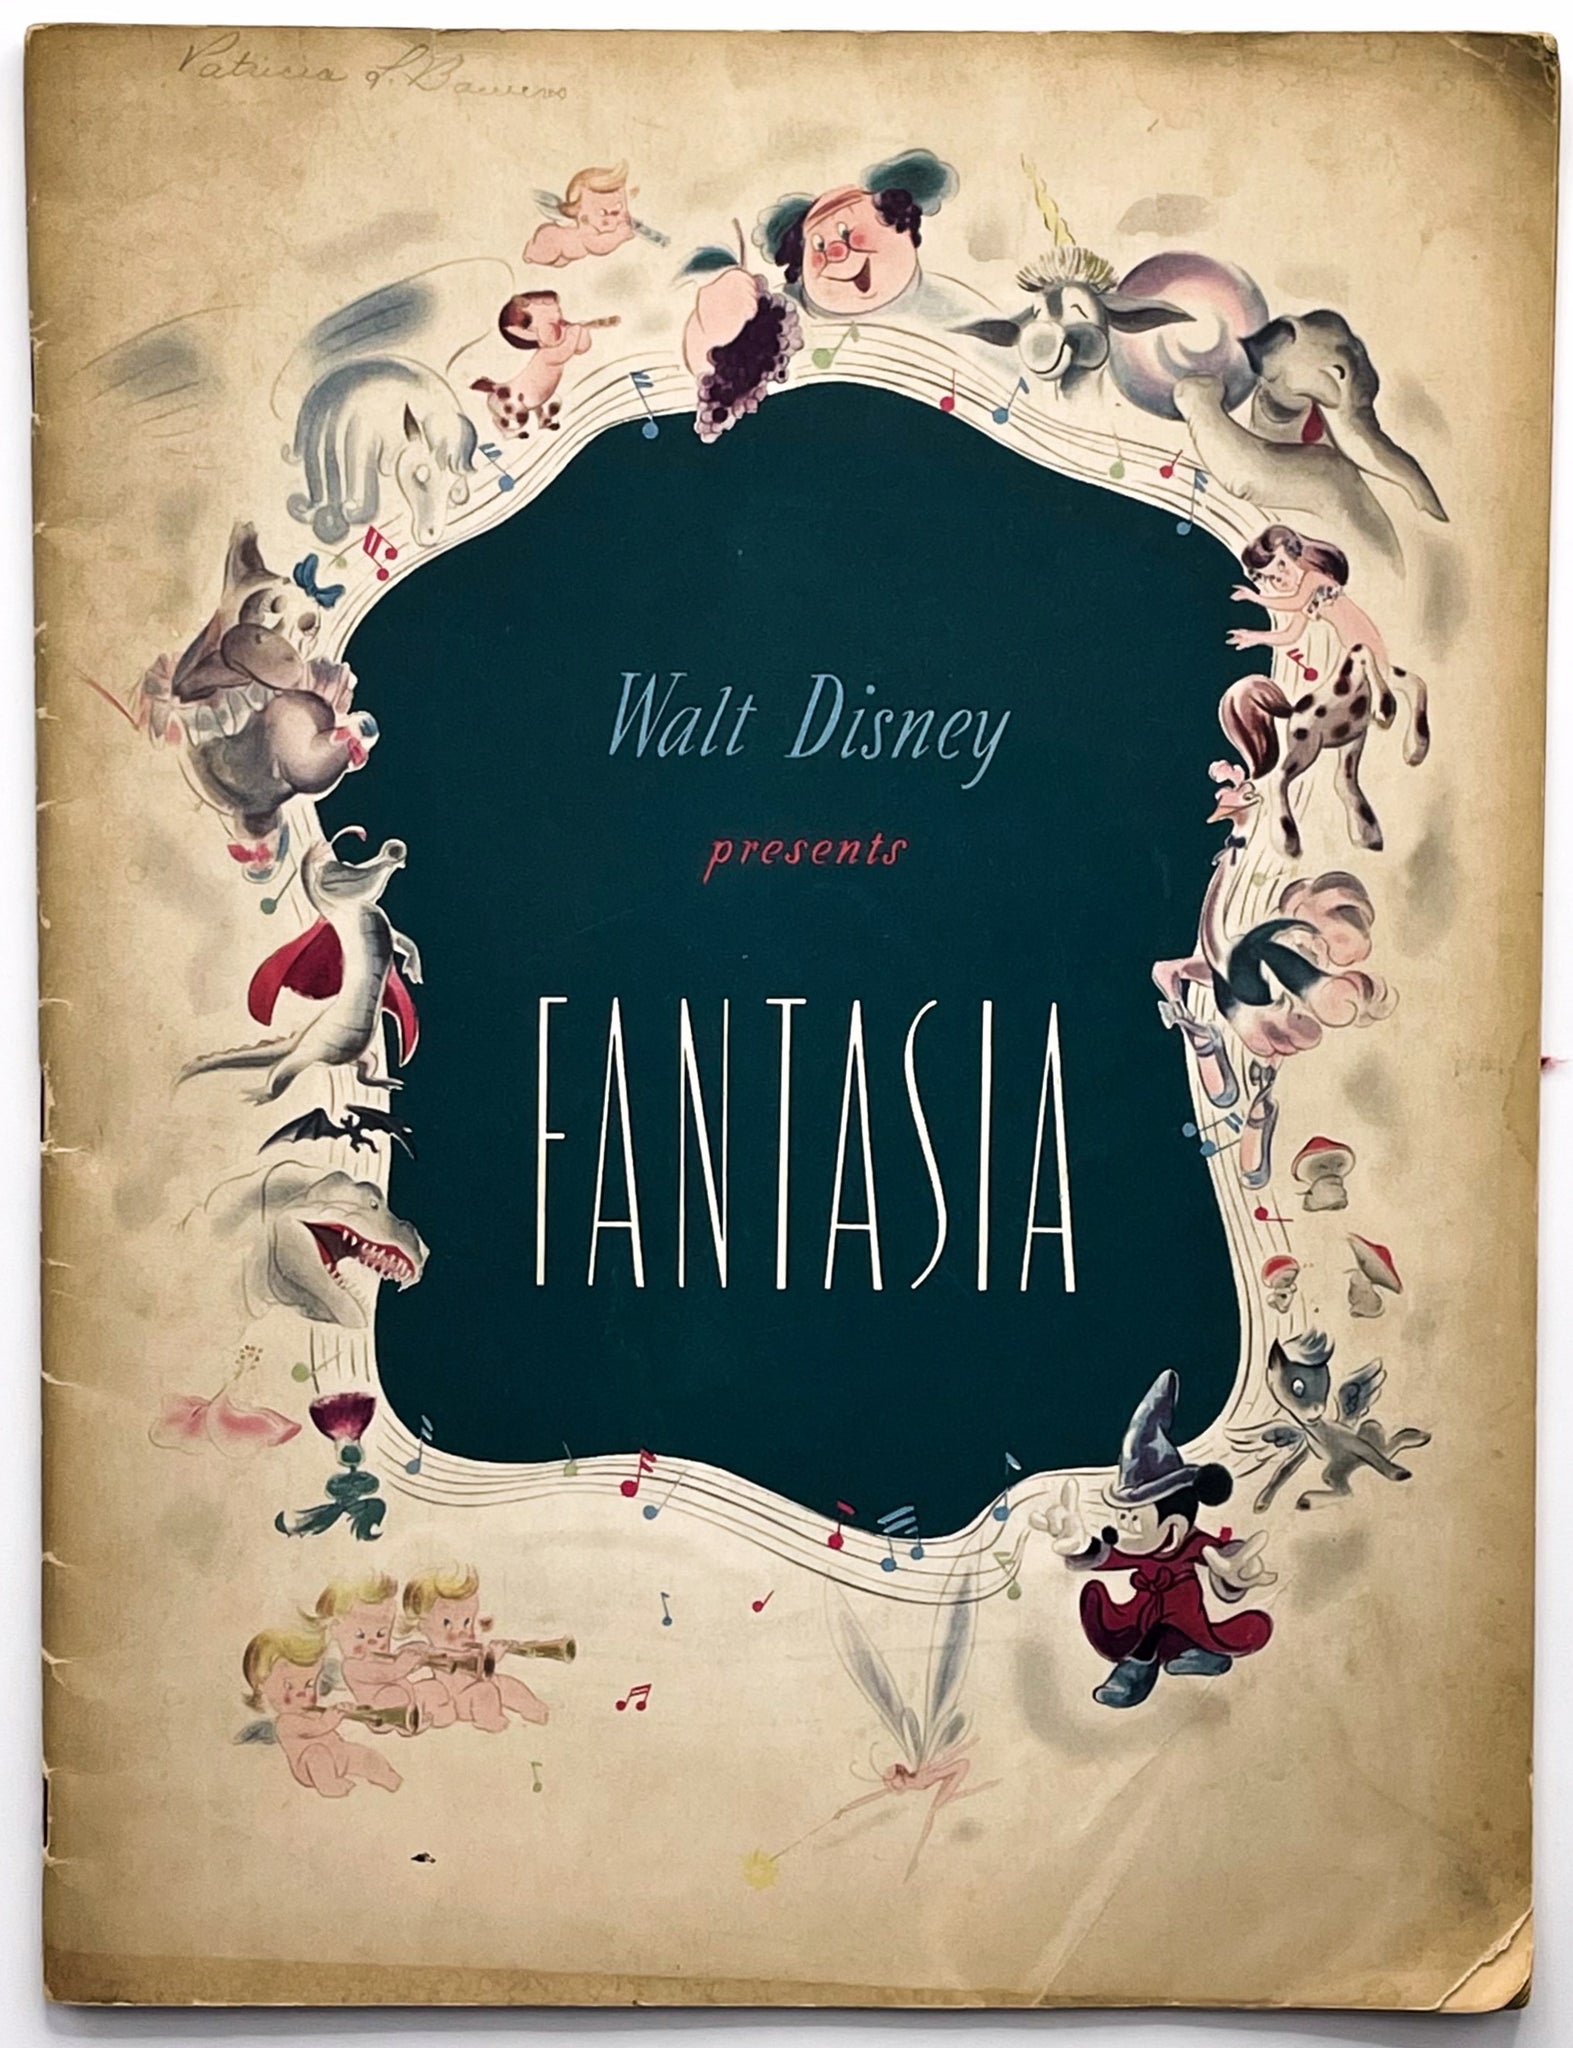 walt disney fantasia